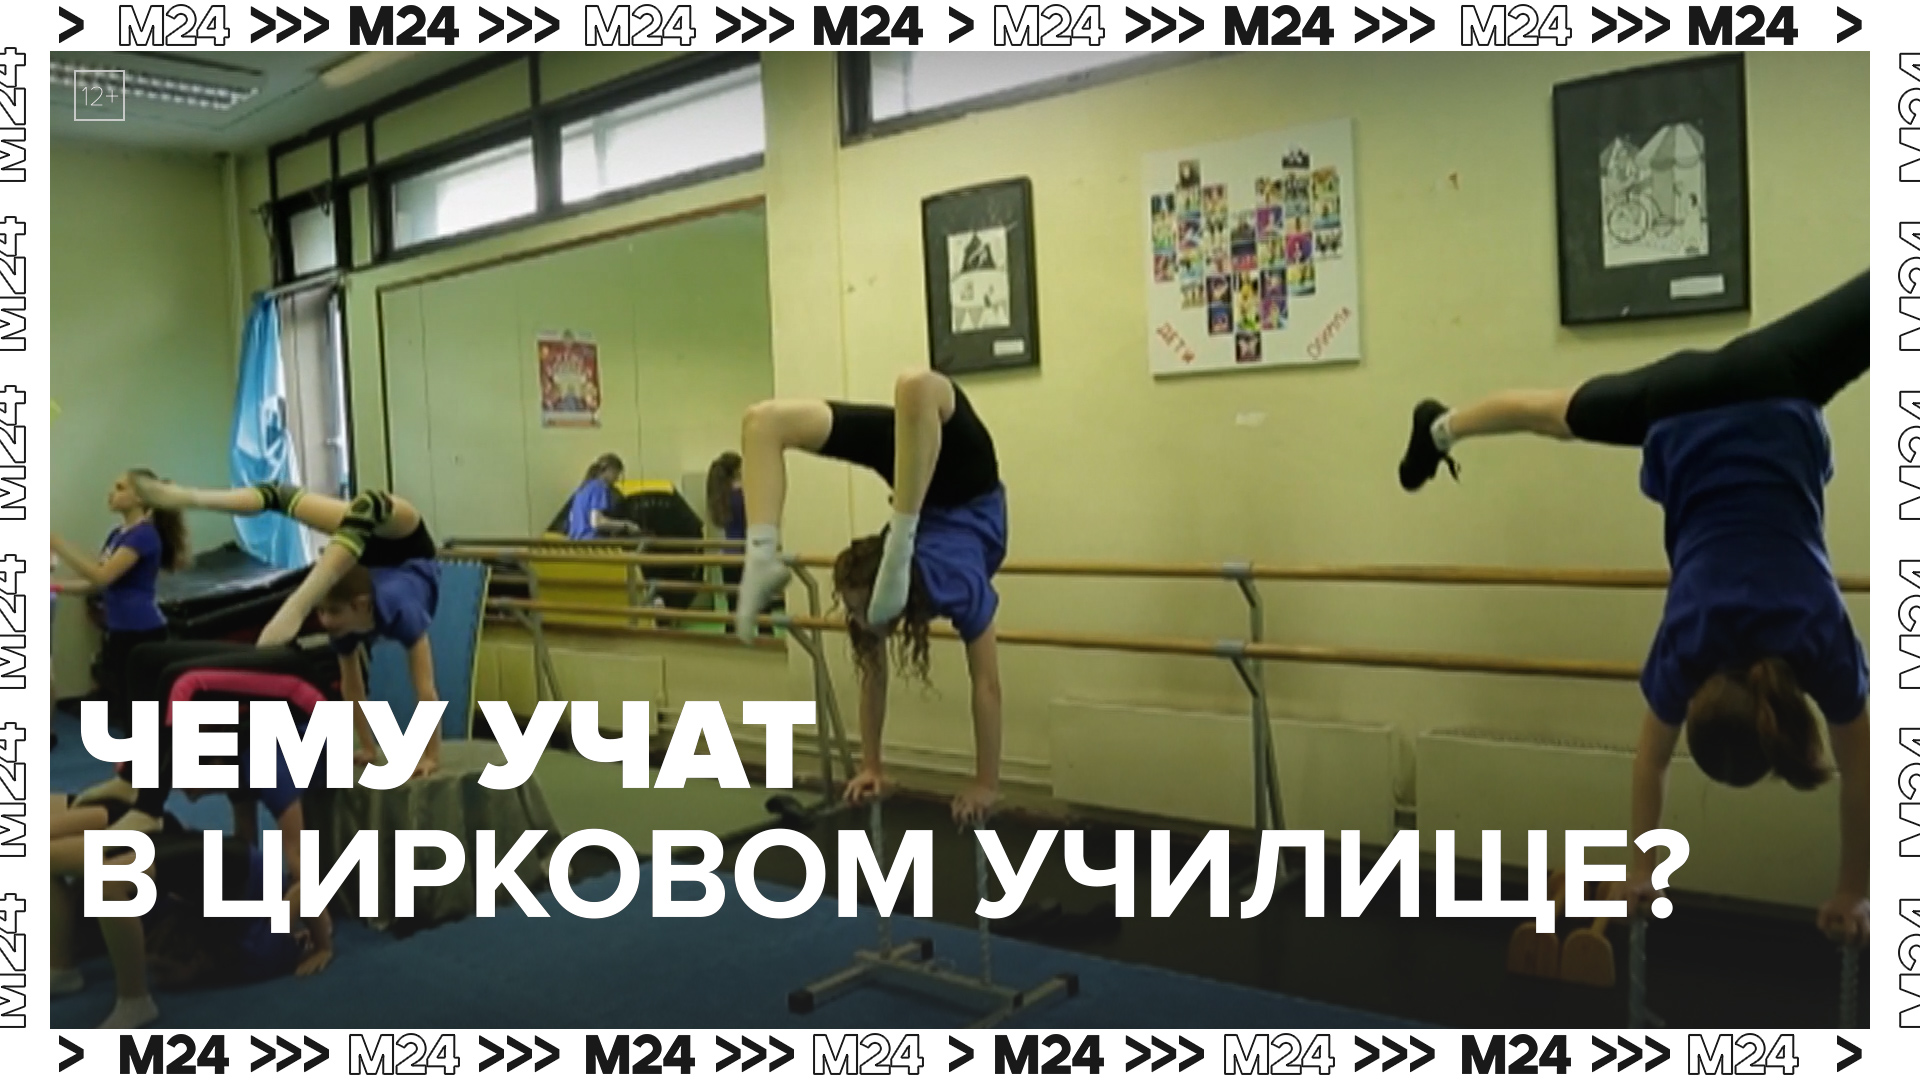 Чему учат в цирковом училище? — Москва24|Контент